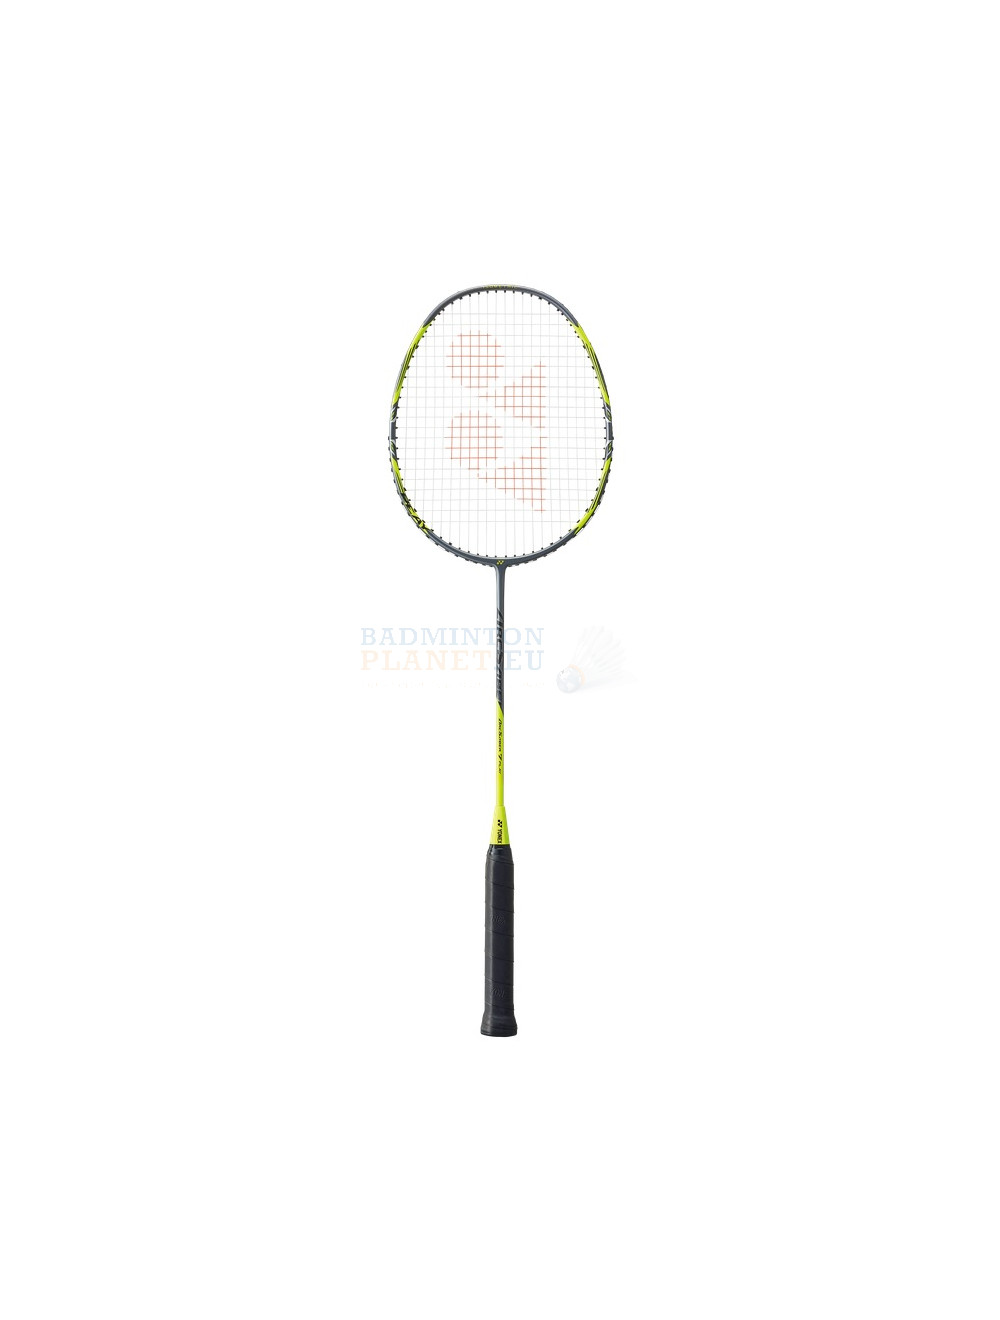 Yonex Arcsaber 7 Play badminton racket?